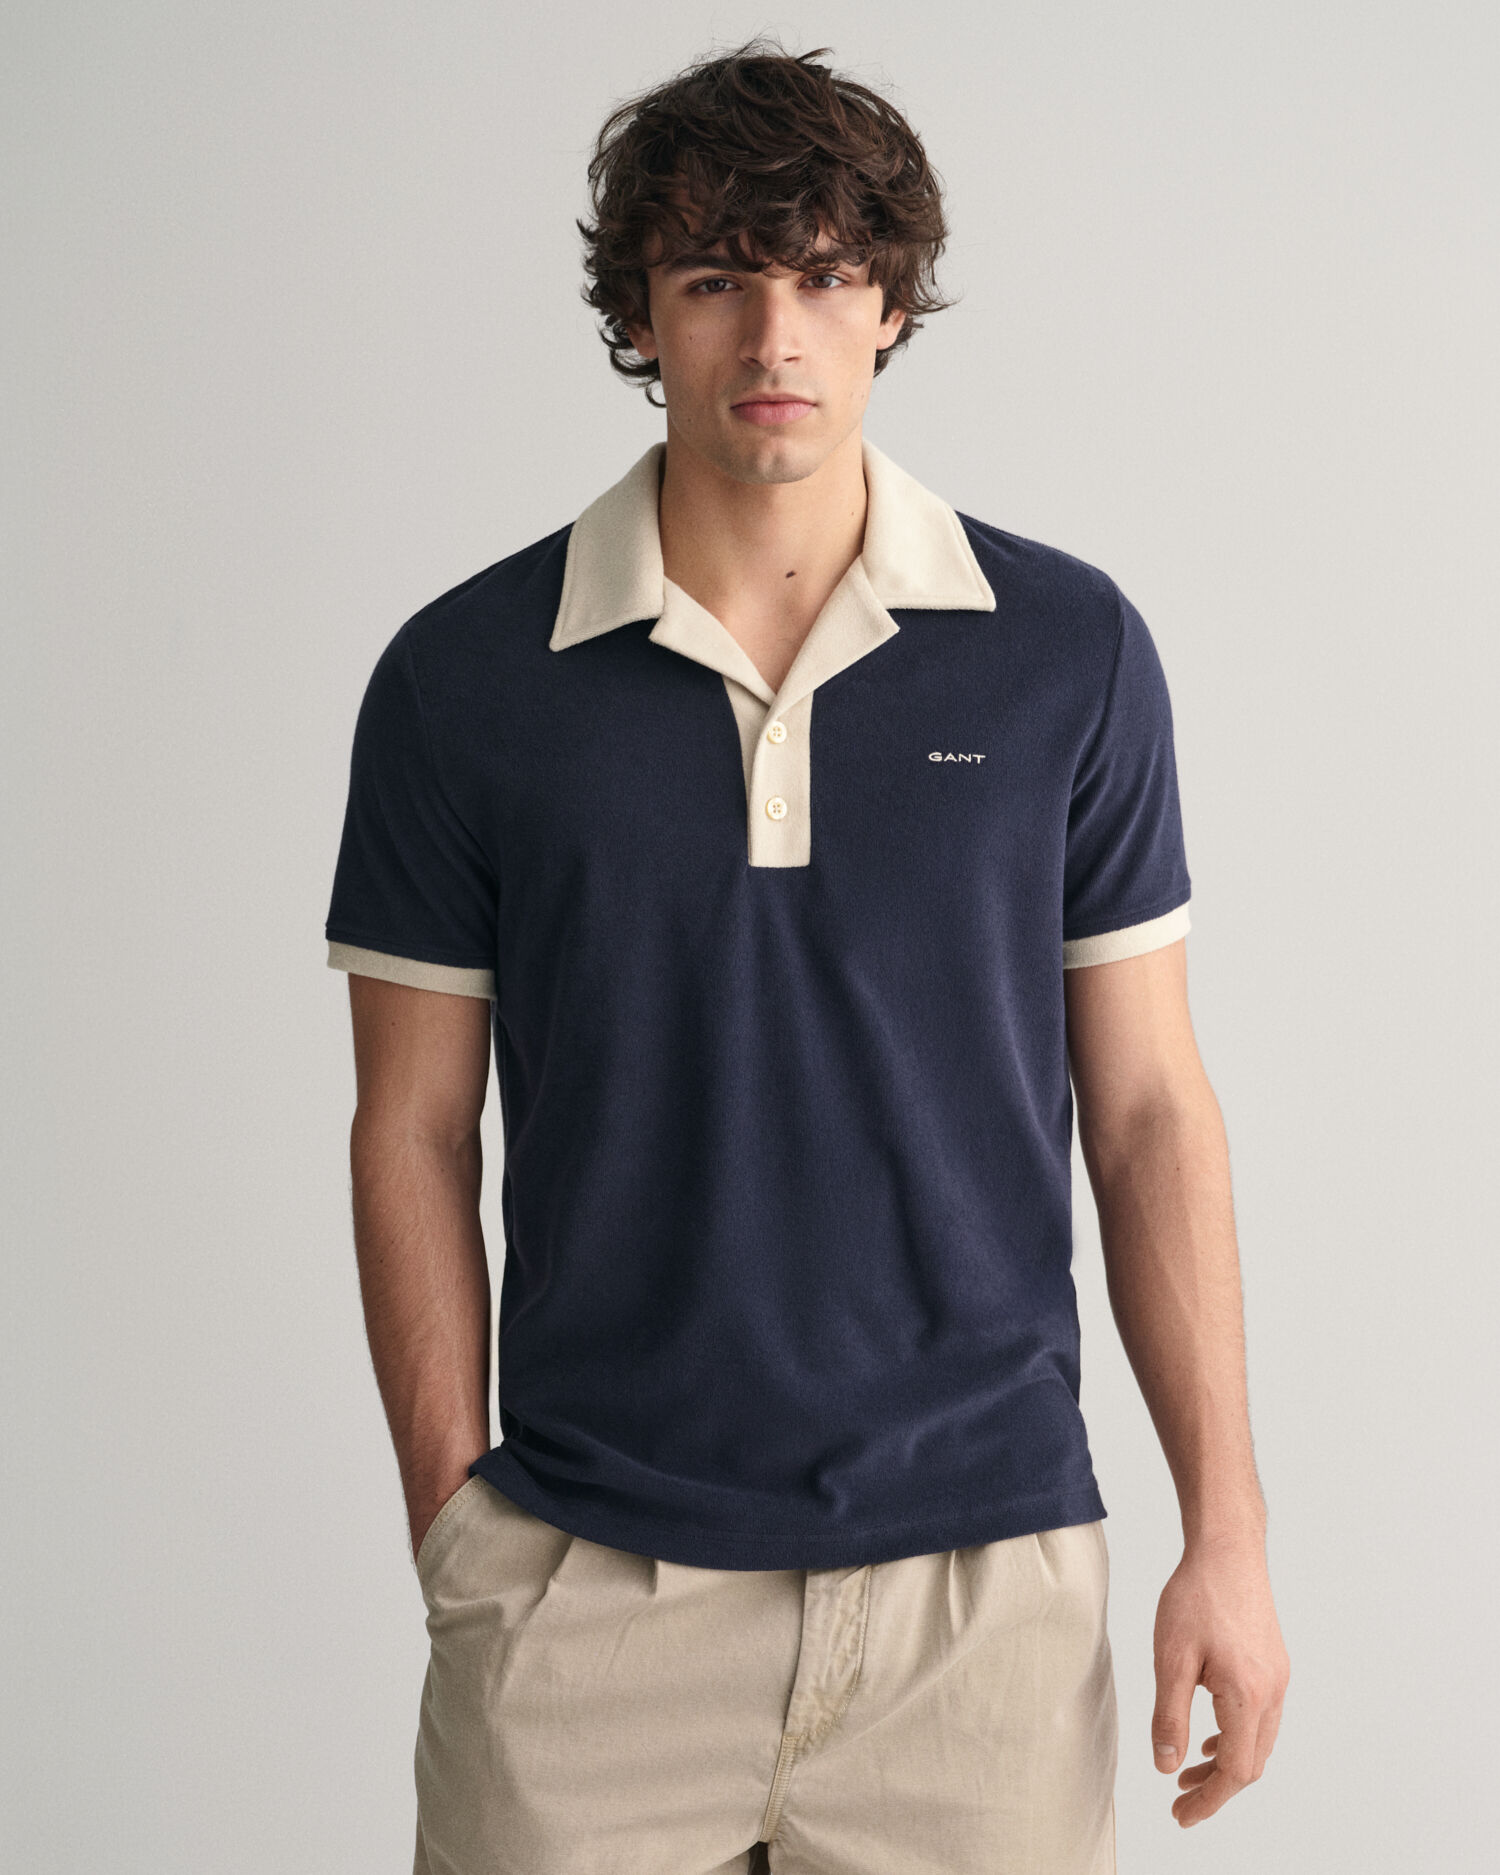 GANT Men's Cotton Linen Striped Long Sleeved Shirt - Rich Blue